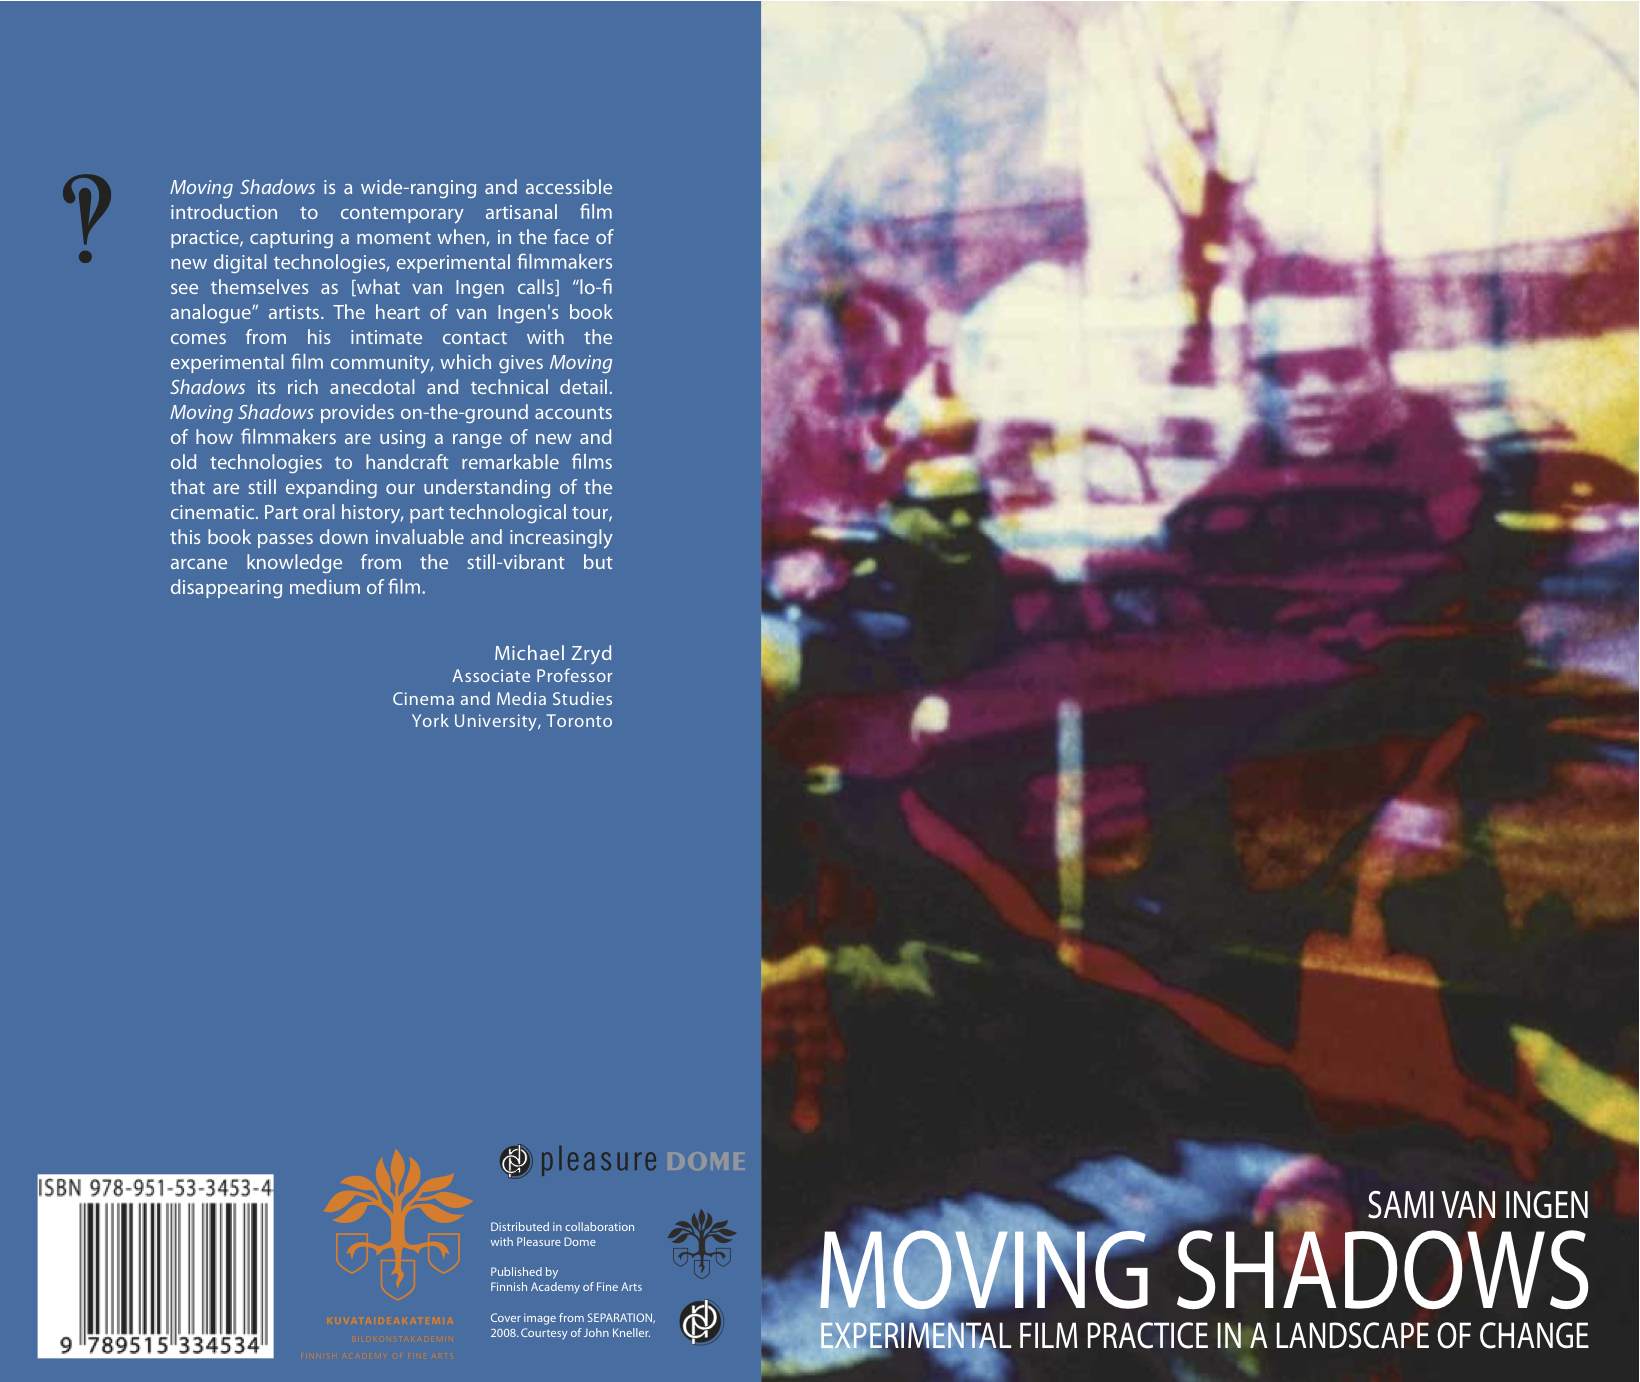 Moving Shadows